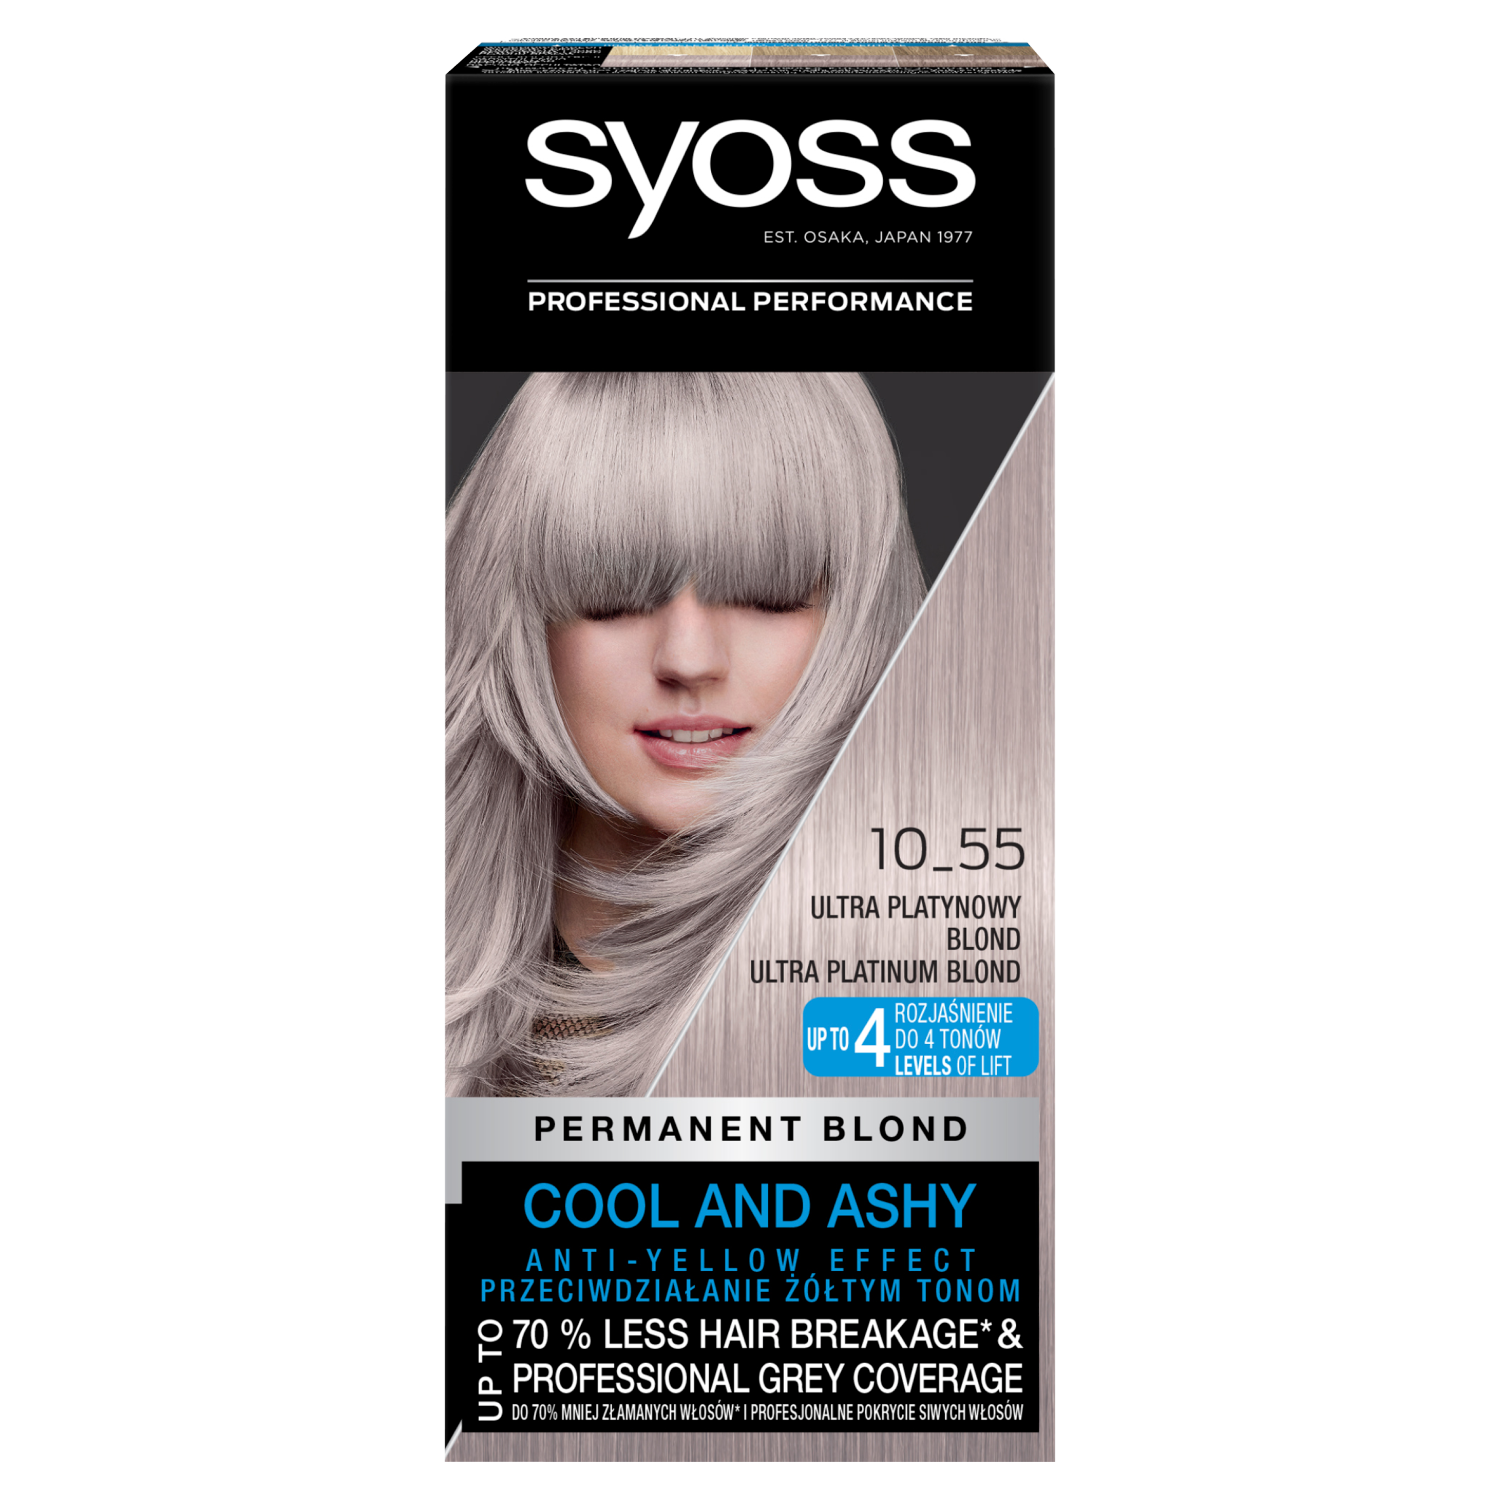 Номер пепельной краски. Краска Syoss professional Performance платиновый. Крем-краска для волос Syoss 10-55 ультра платиновый блонд. Сьёс краска платиновый блонд. Краска сьес 10-55.